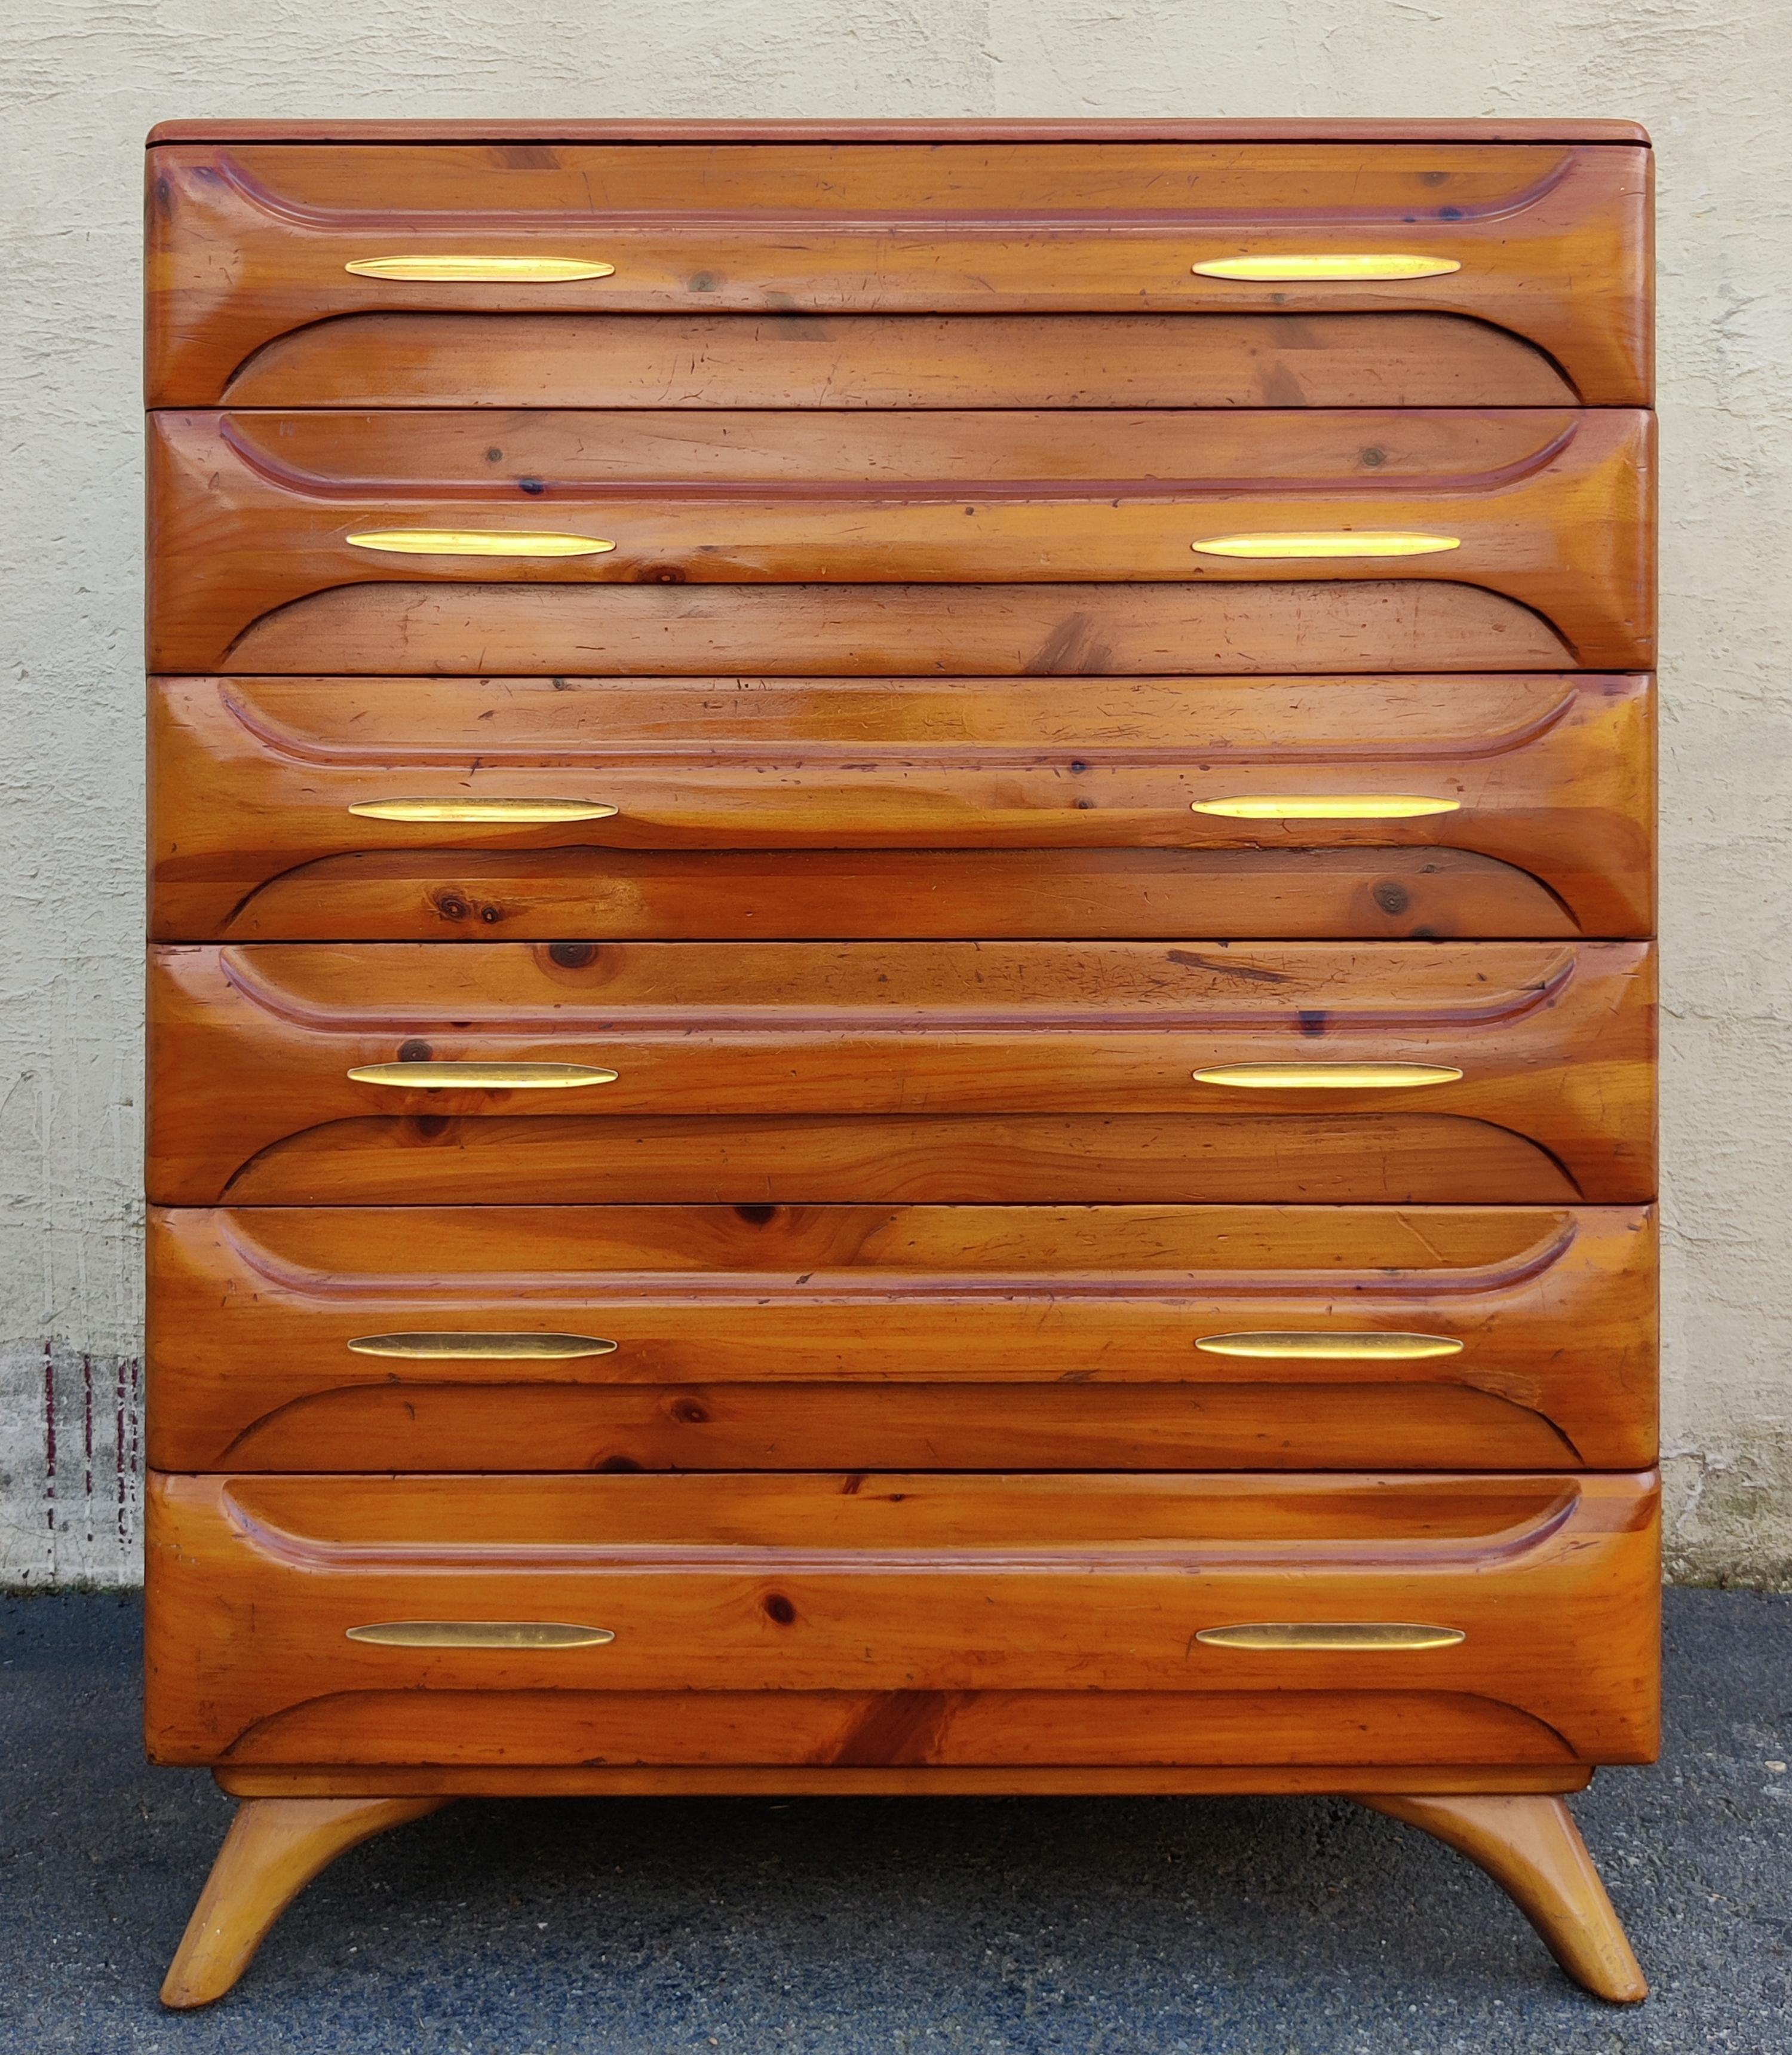 Diese hohe Kommode wurde in den 1970er Jahren von der Franklin Shockey Company für ihre Möbelserie Sculptured Pine entworfen und hergestellt. Diese Kommode ist aus massivem Kiefernholz gefertigt und hat eine helle und warme goldene Kieferfarbe mit